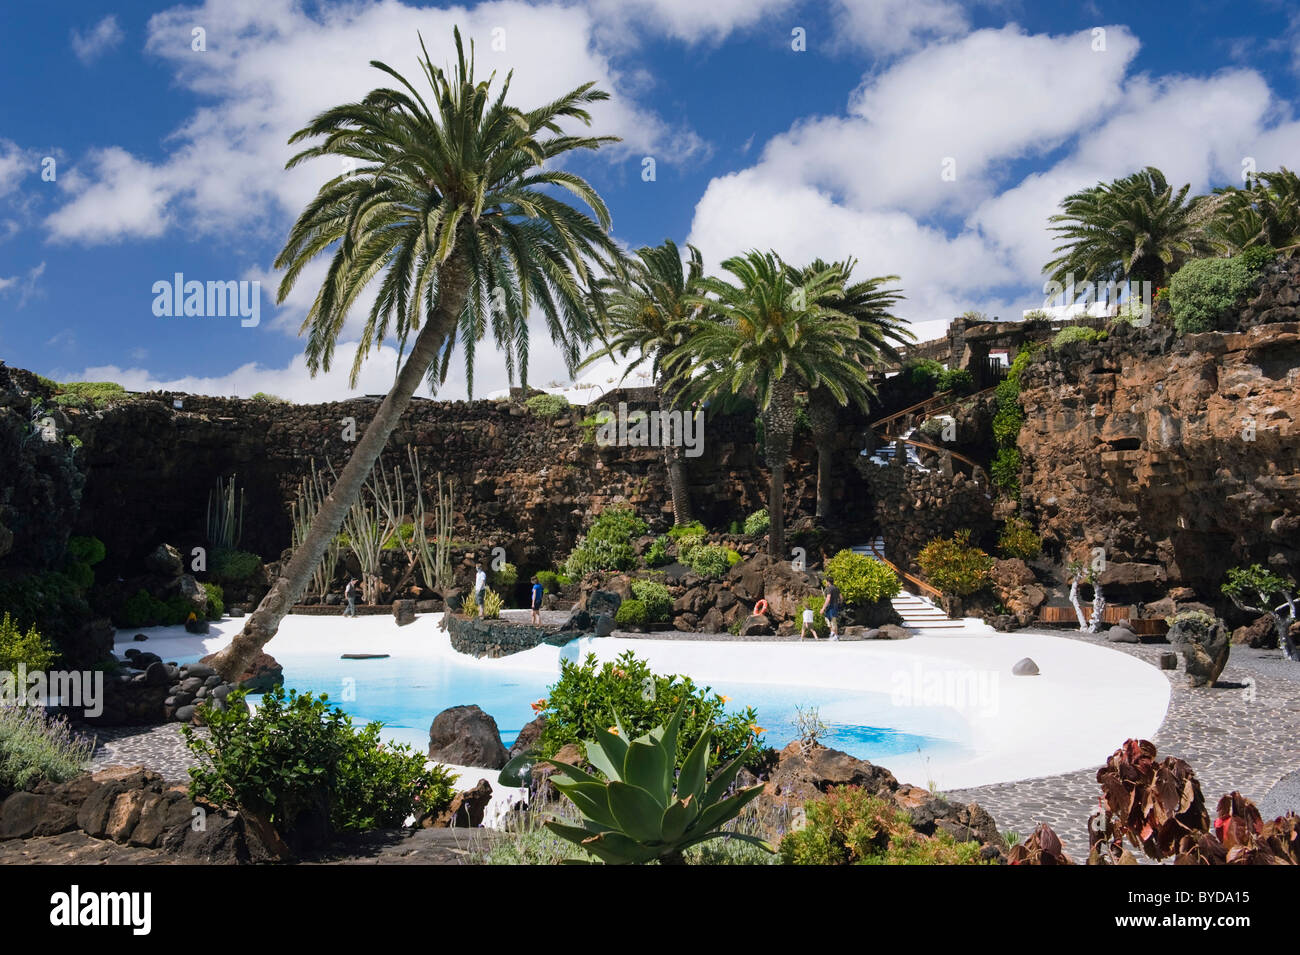 Piscina in grotta lavica, Jameos del Agua, costruita dall'artista Cesar Manrique, Lanzarote, Isole Canarie, Spagna, Europa Foto Stock